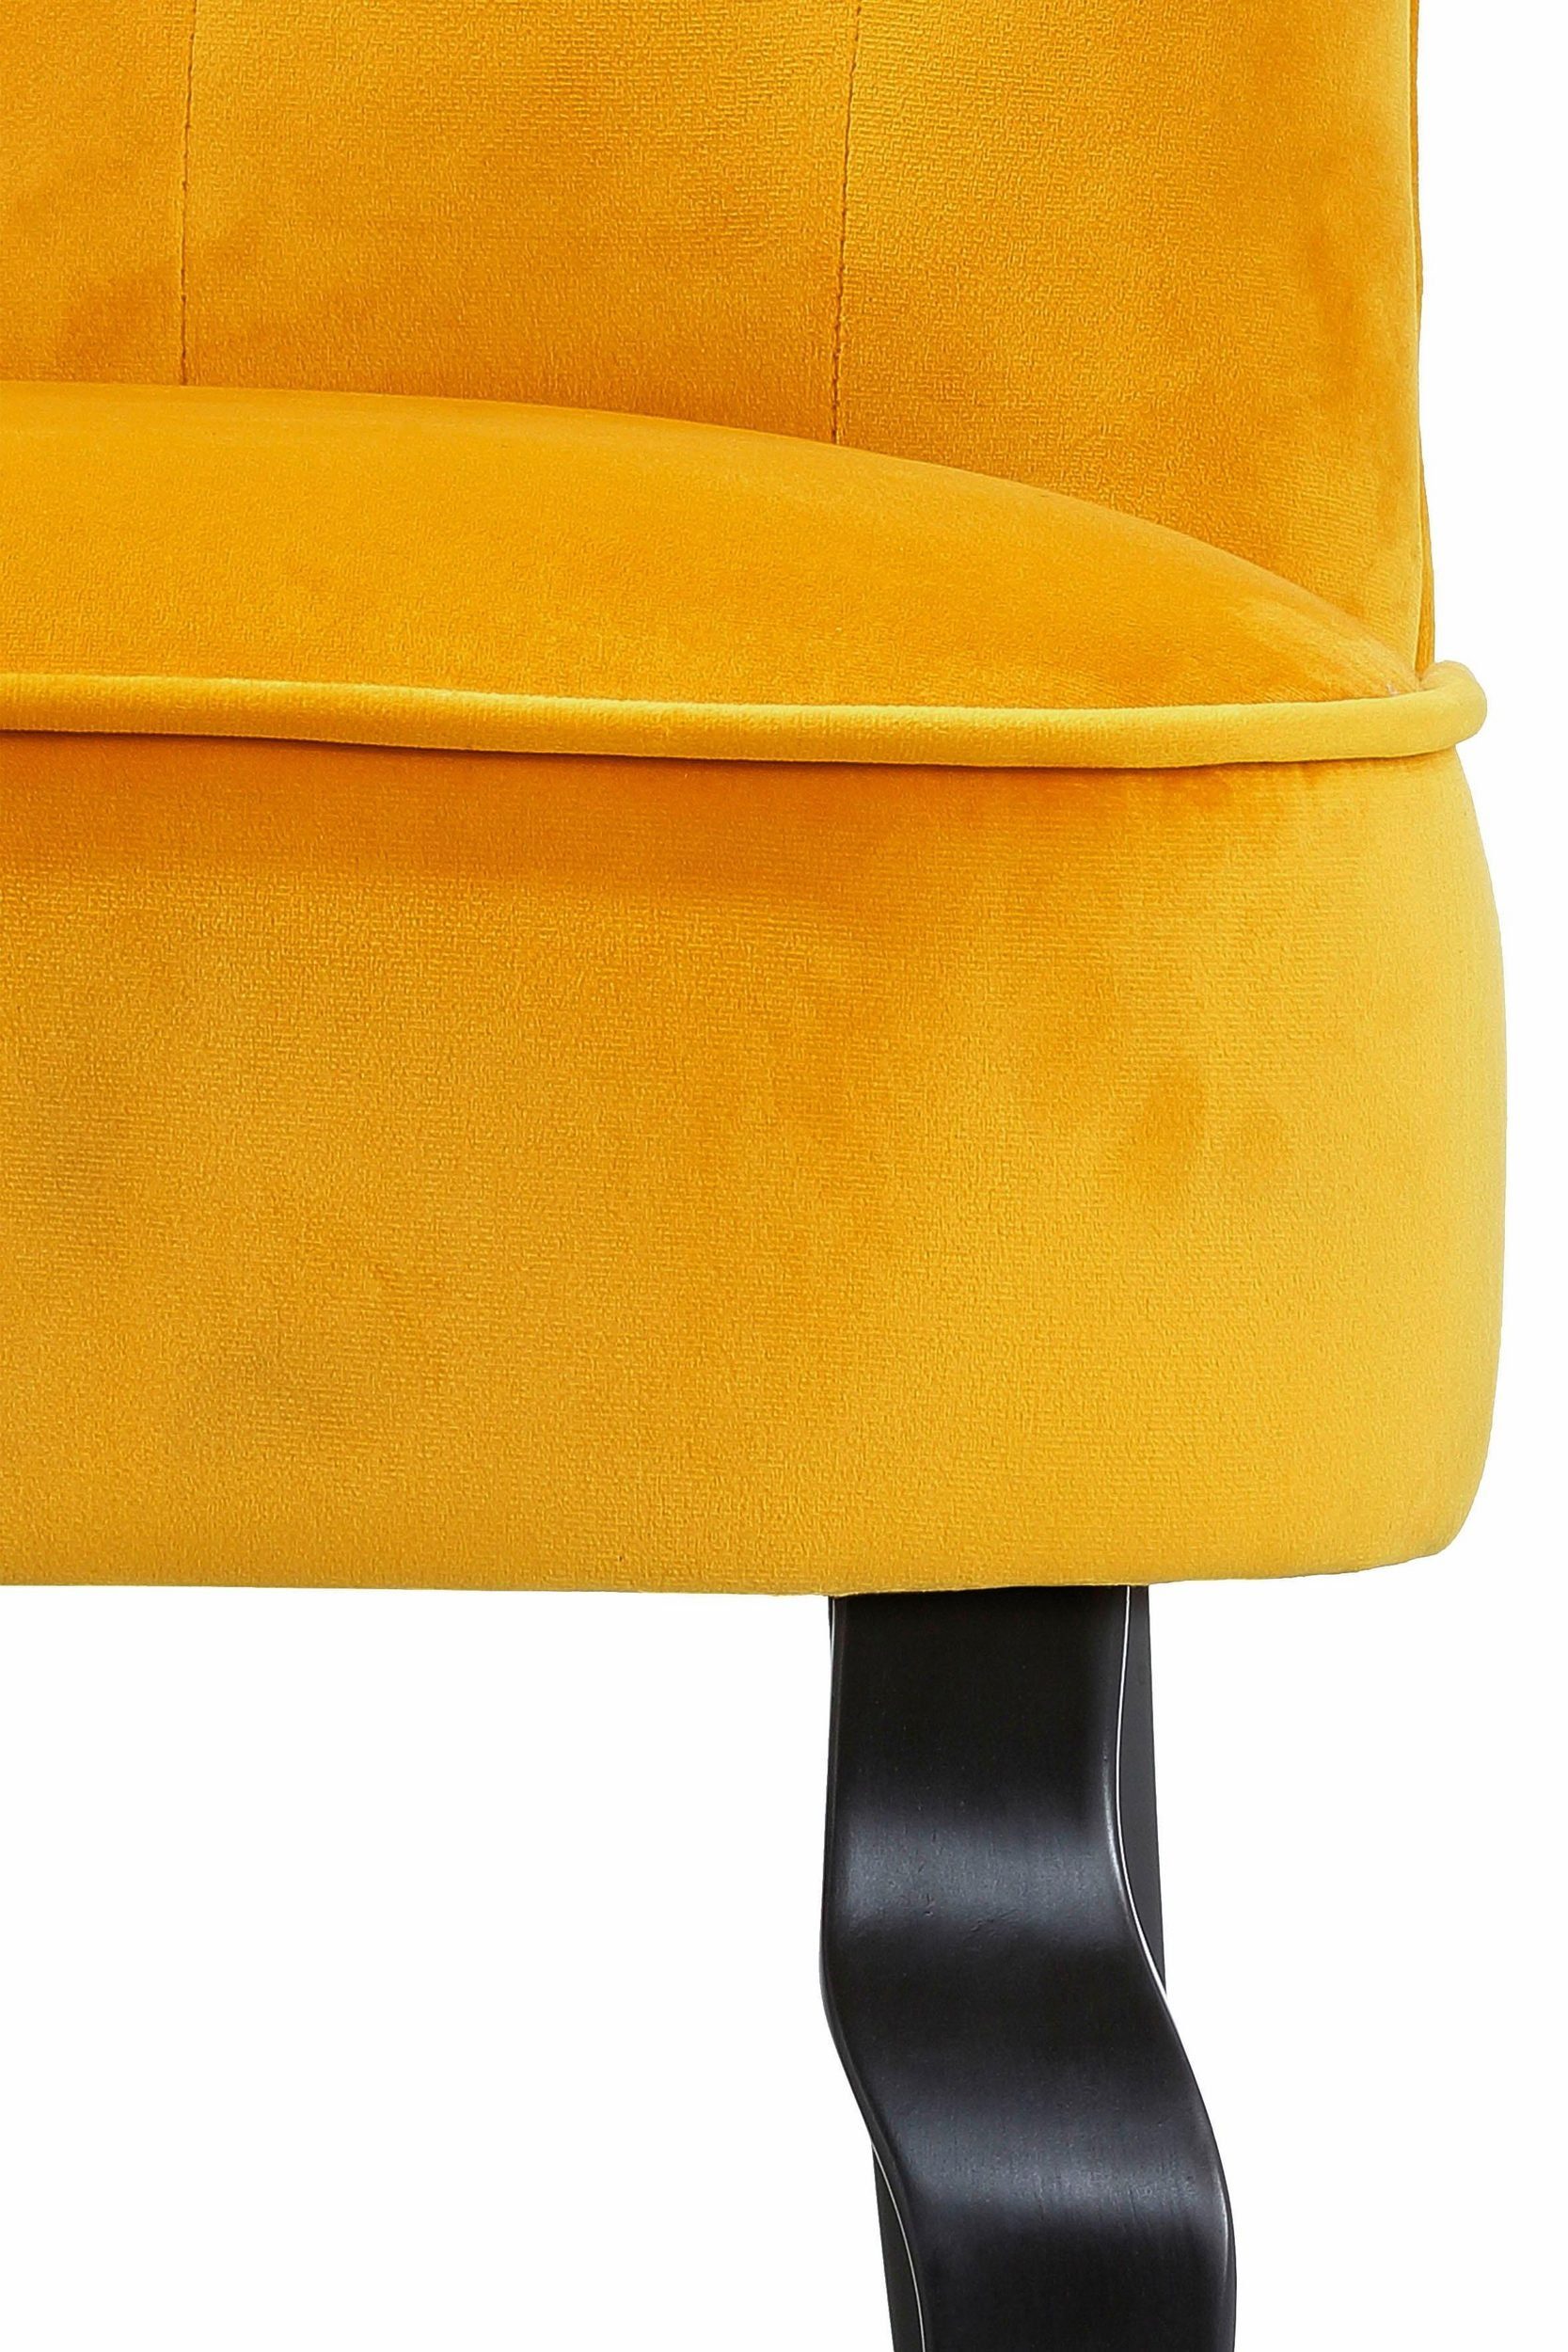 loft24 Polsterstuhl Brittany, Samtvelours cm mit Knopfheftung, aus Sitzhöhe orange 46